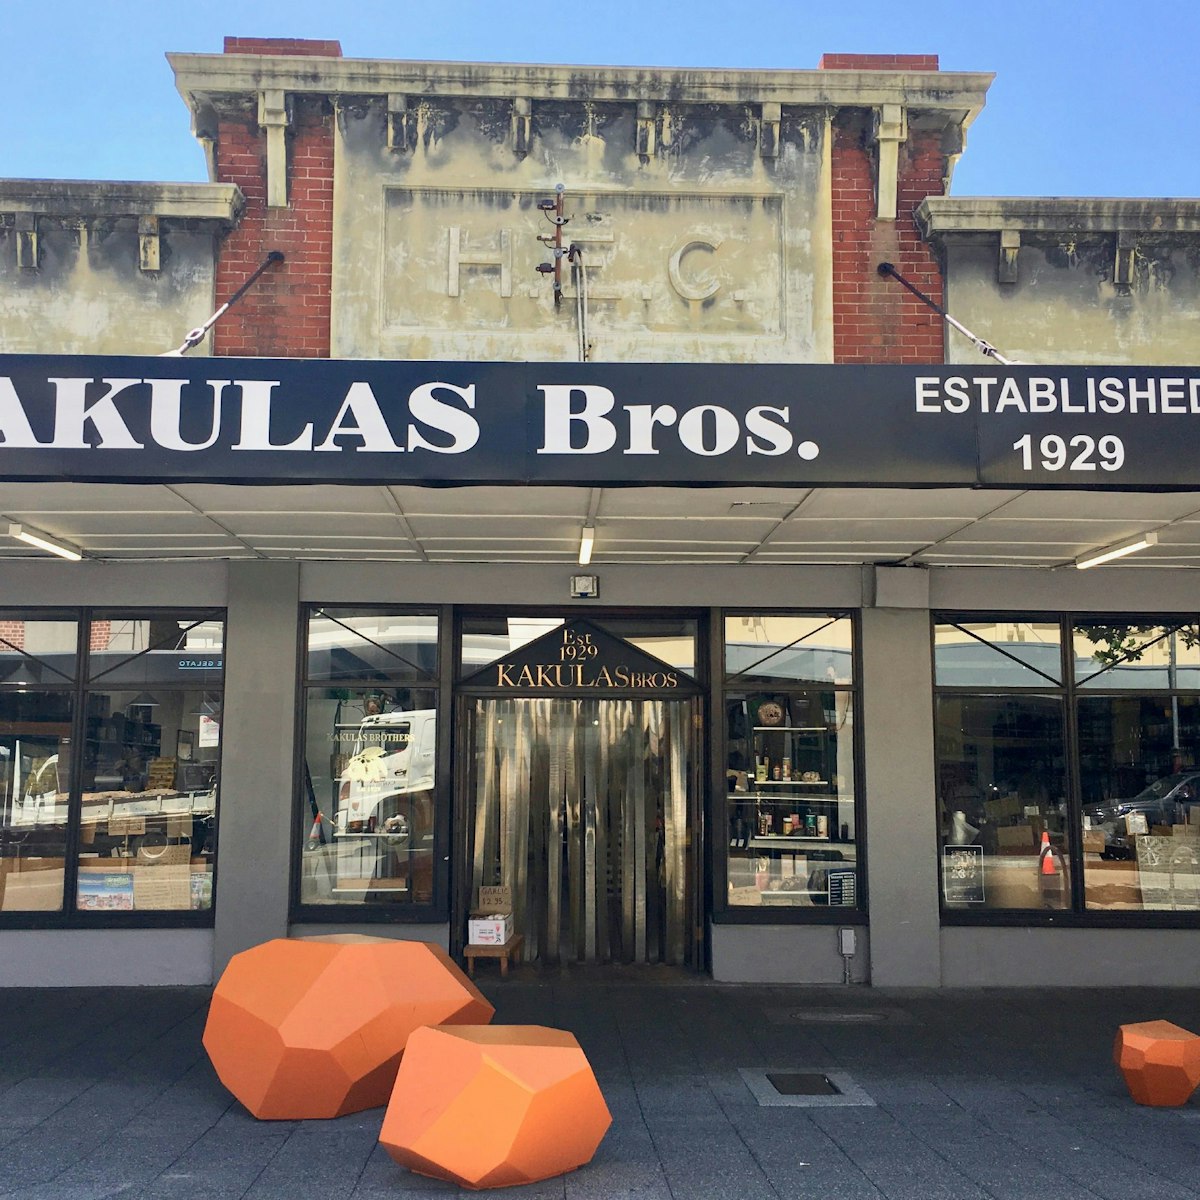 Kakulas Bros, Northbridge.